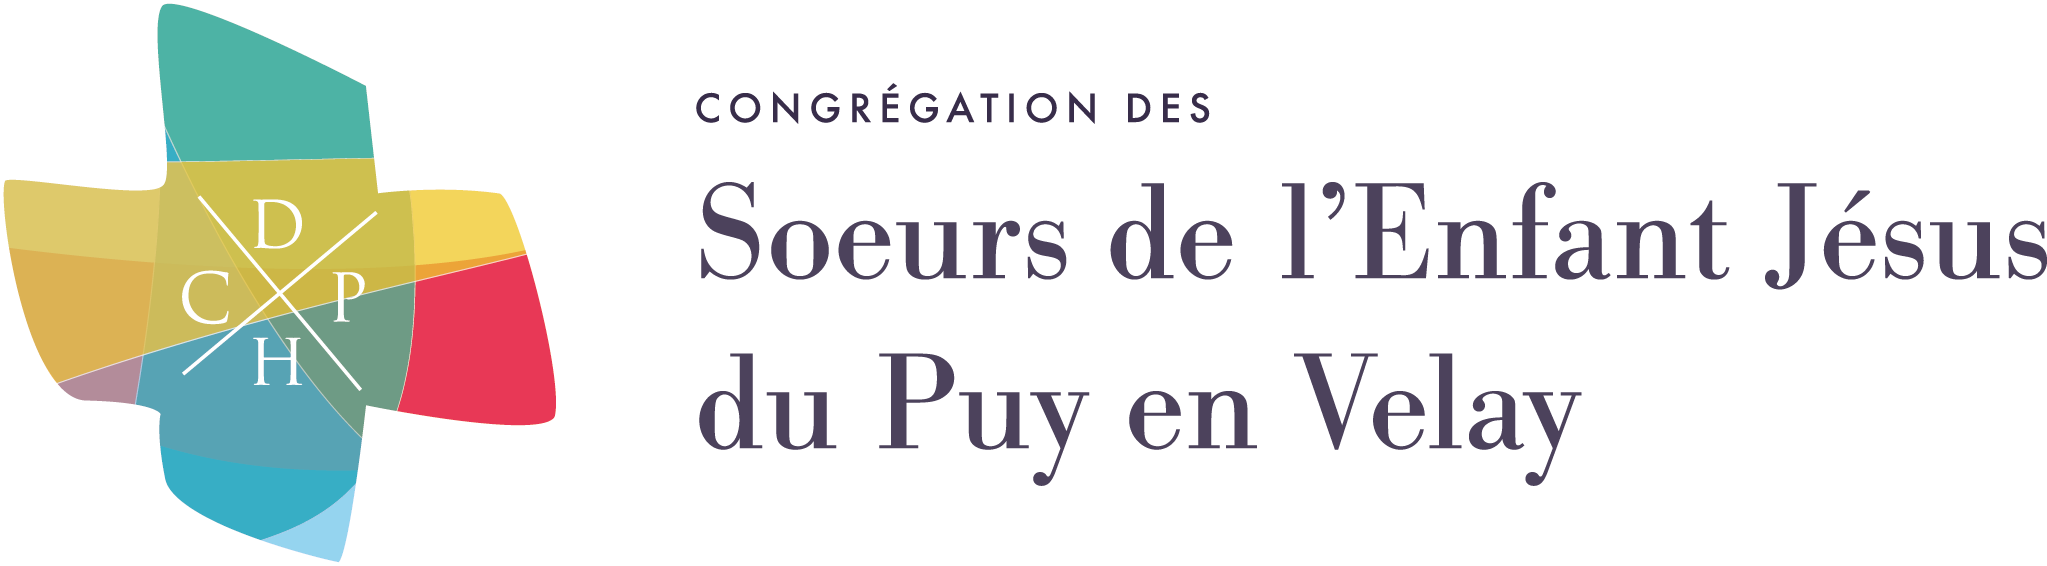 logo-congregation